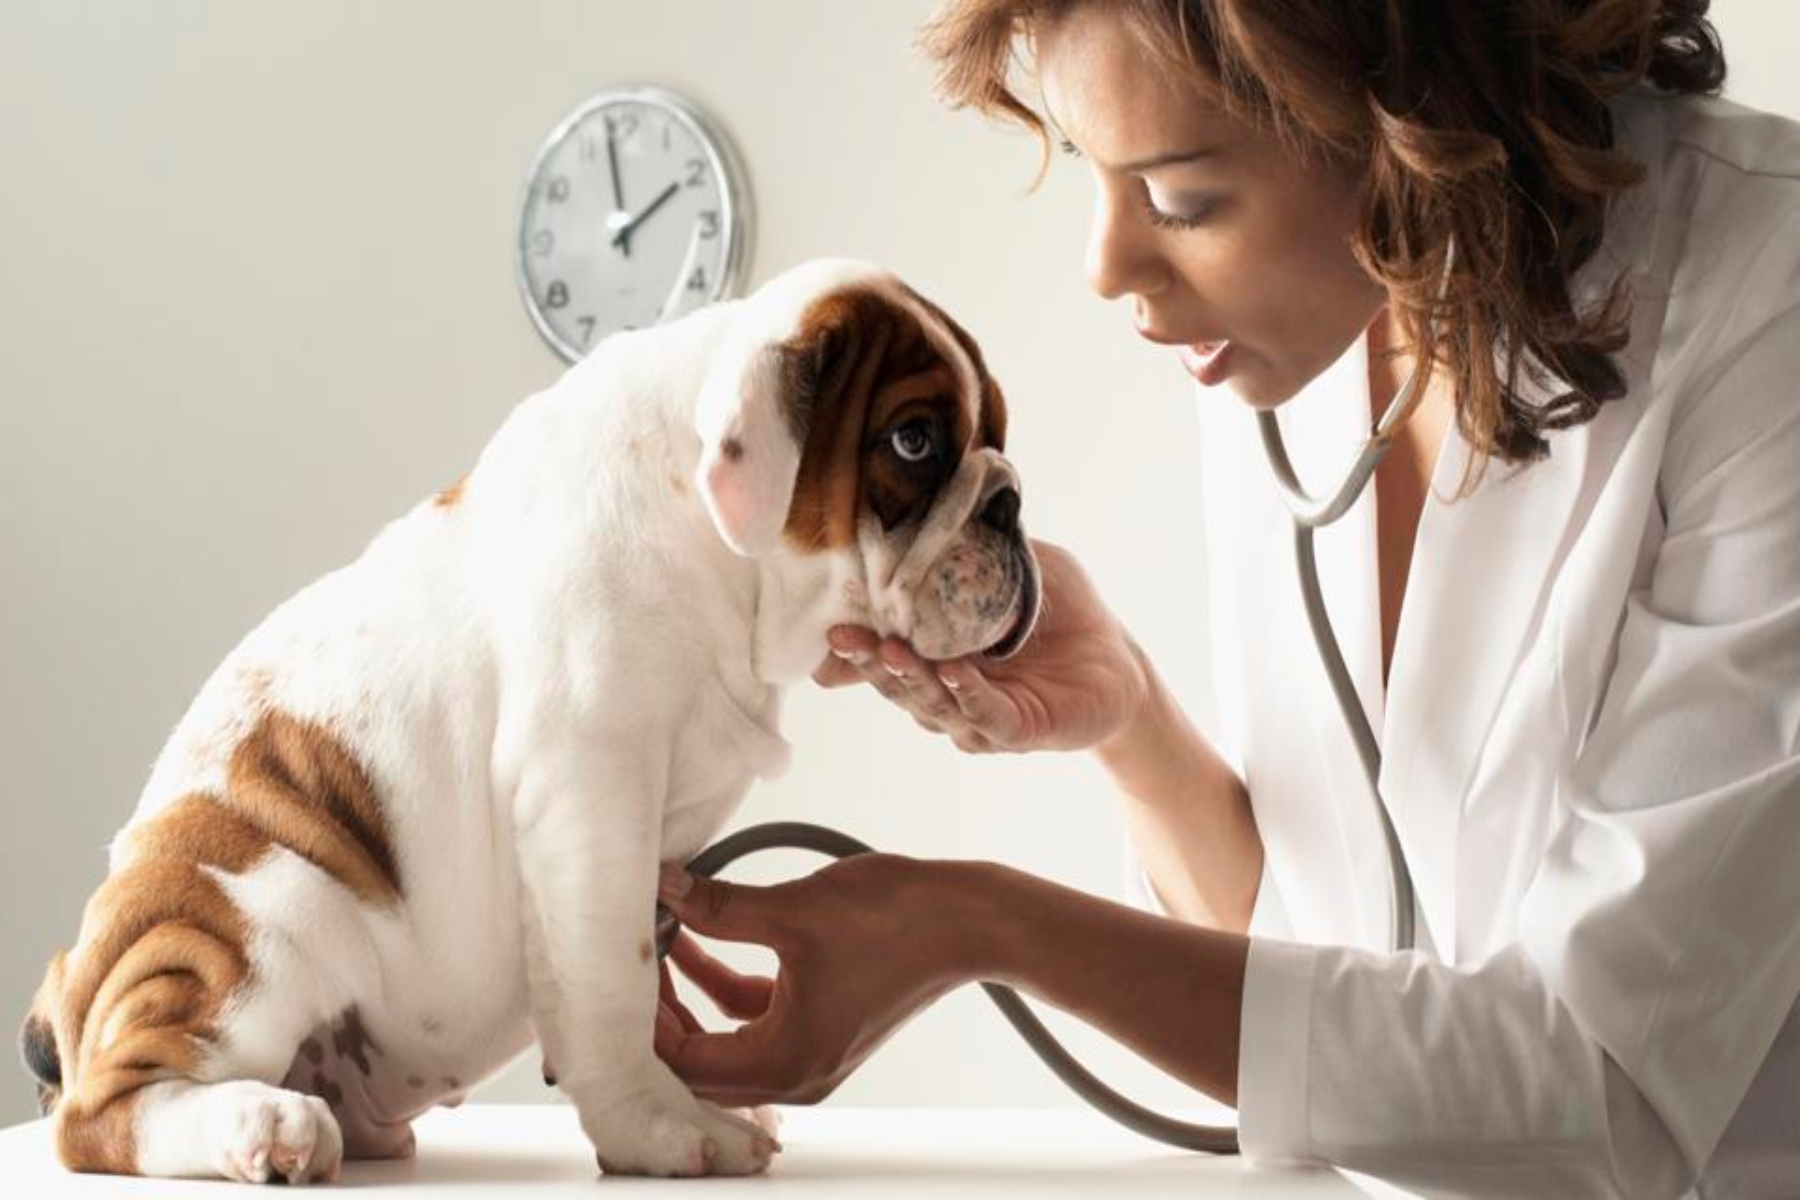 Κατοικίδια έλεγχος: Γιατί ο τακτικός κτηνιατρικός έλεγχος είναι απαραίτητος για την οδοντική υγεία των κατοικιδίων;